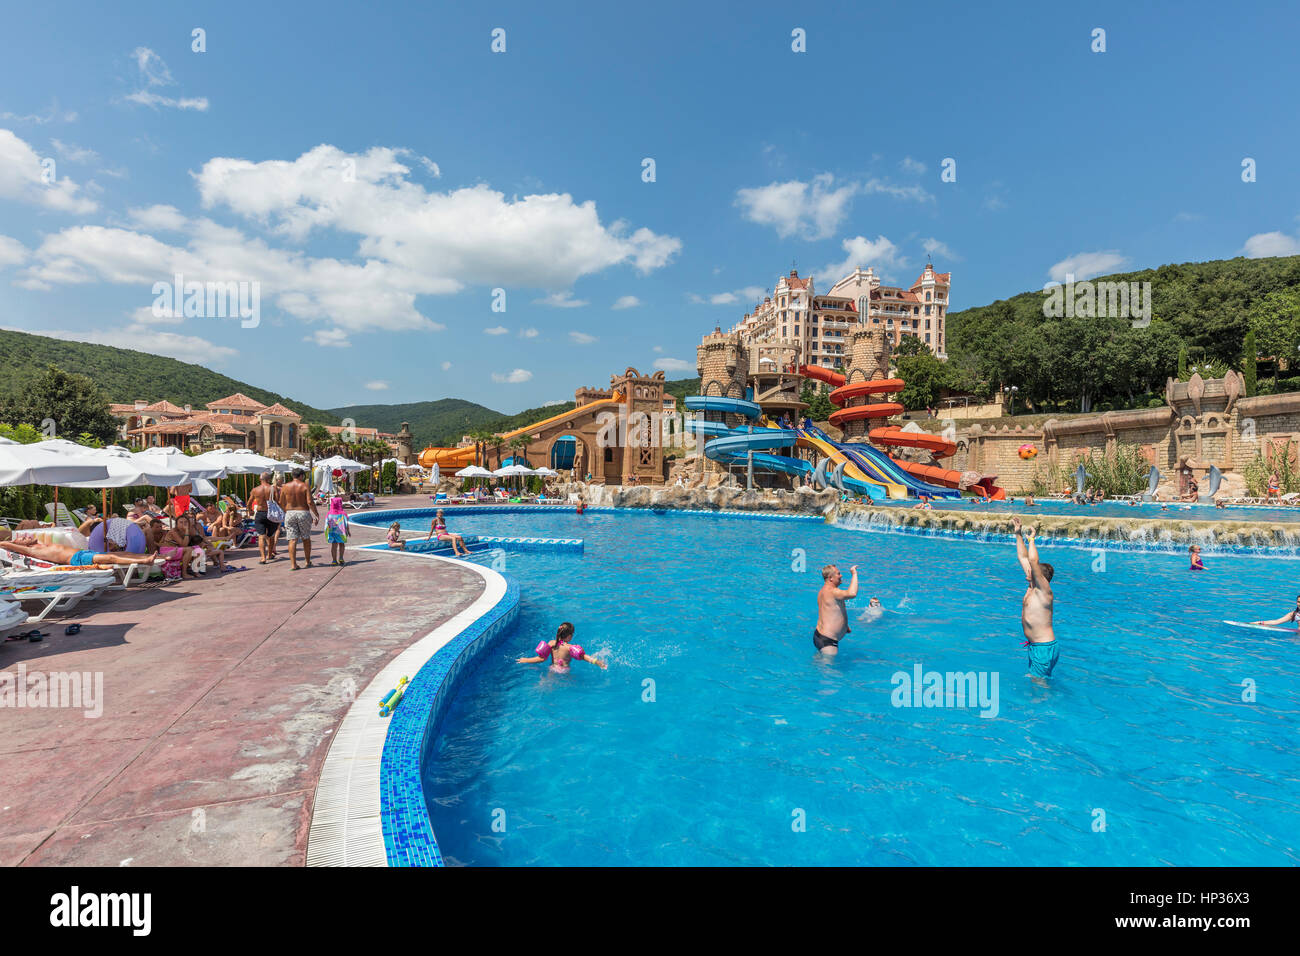 Stock Foto - Royal Castle Hotel in Elenite, Bulgarien Stockfoto